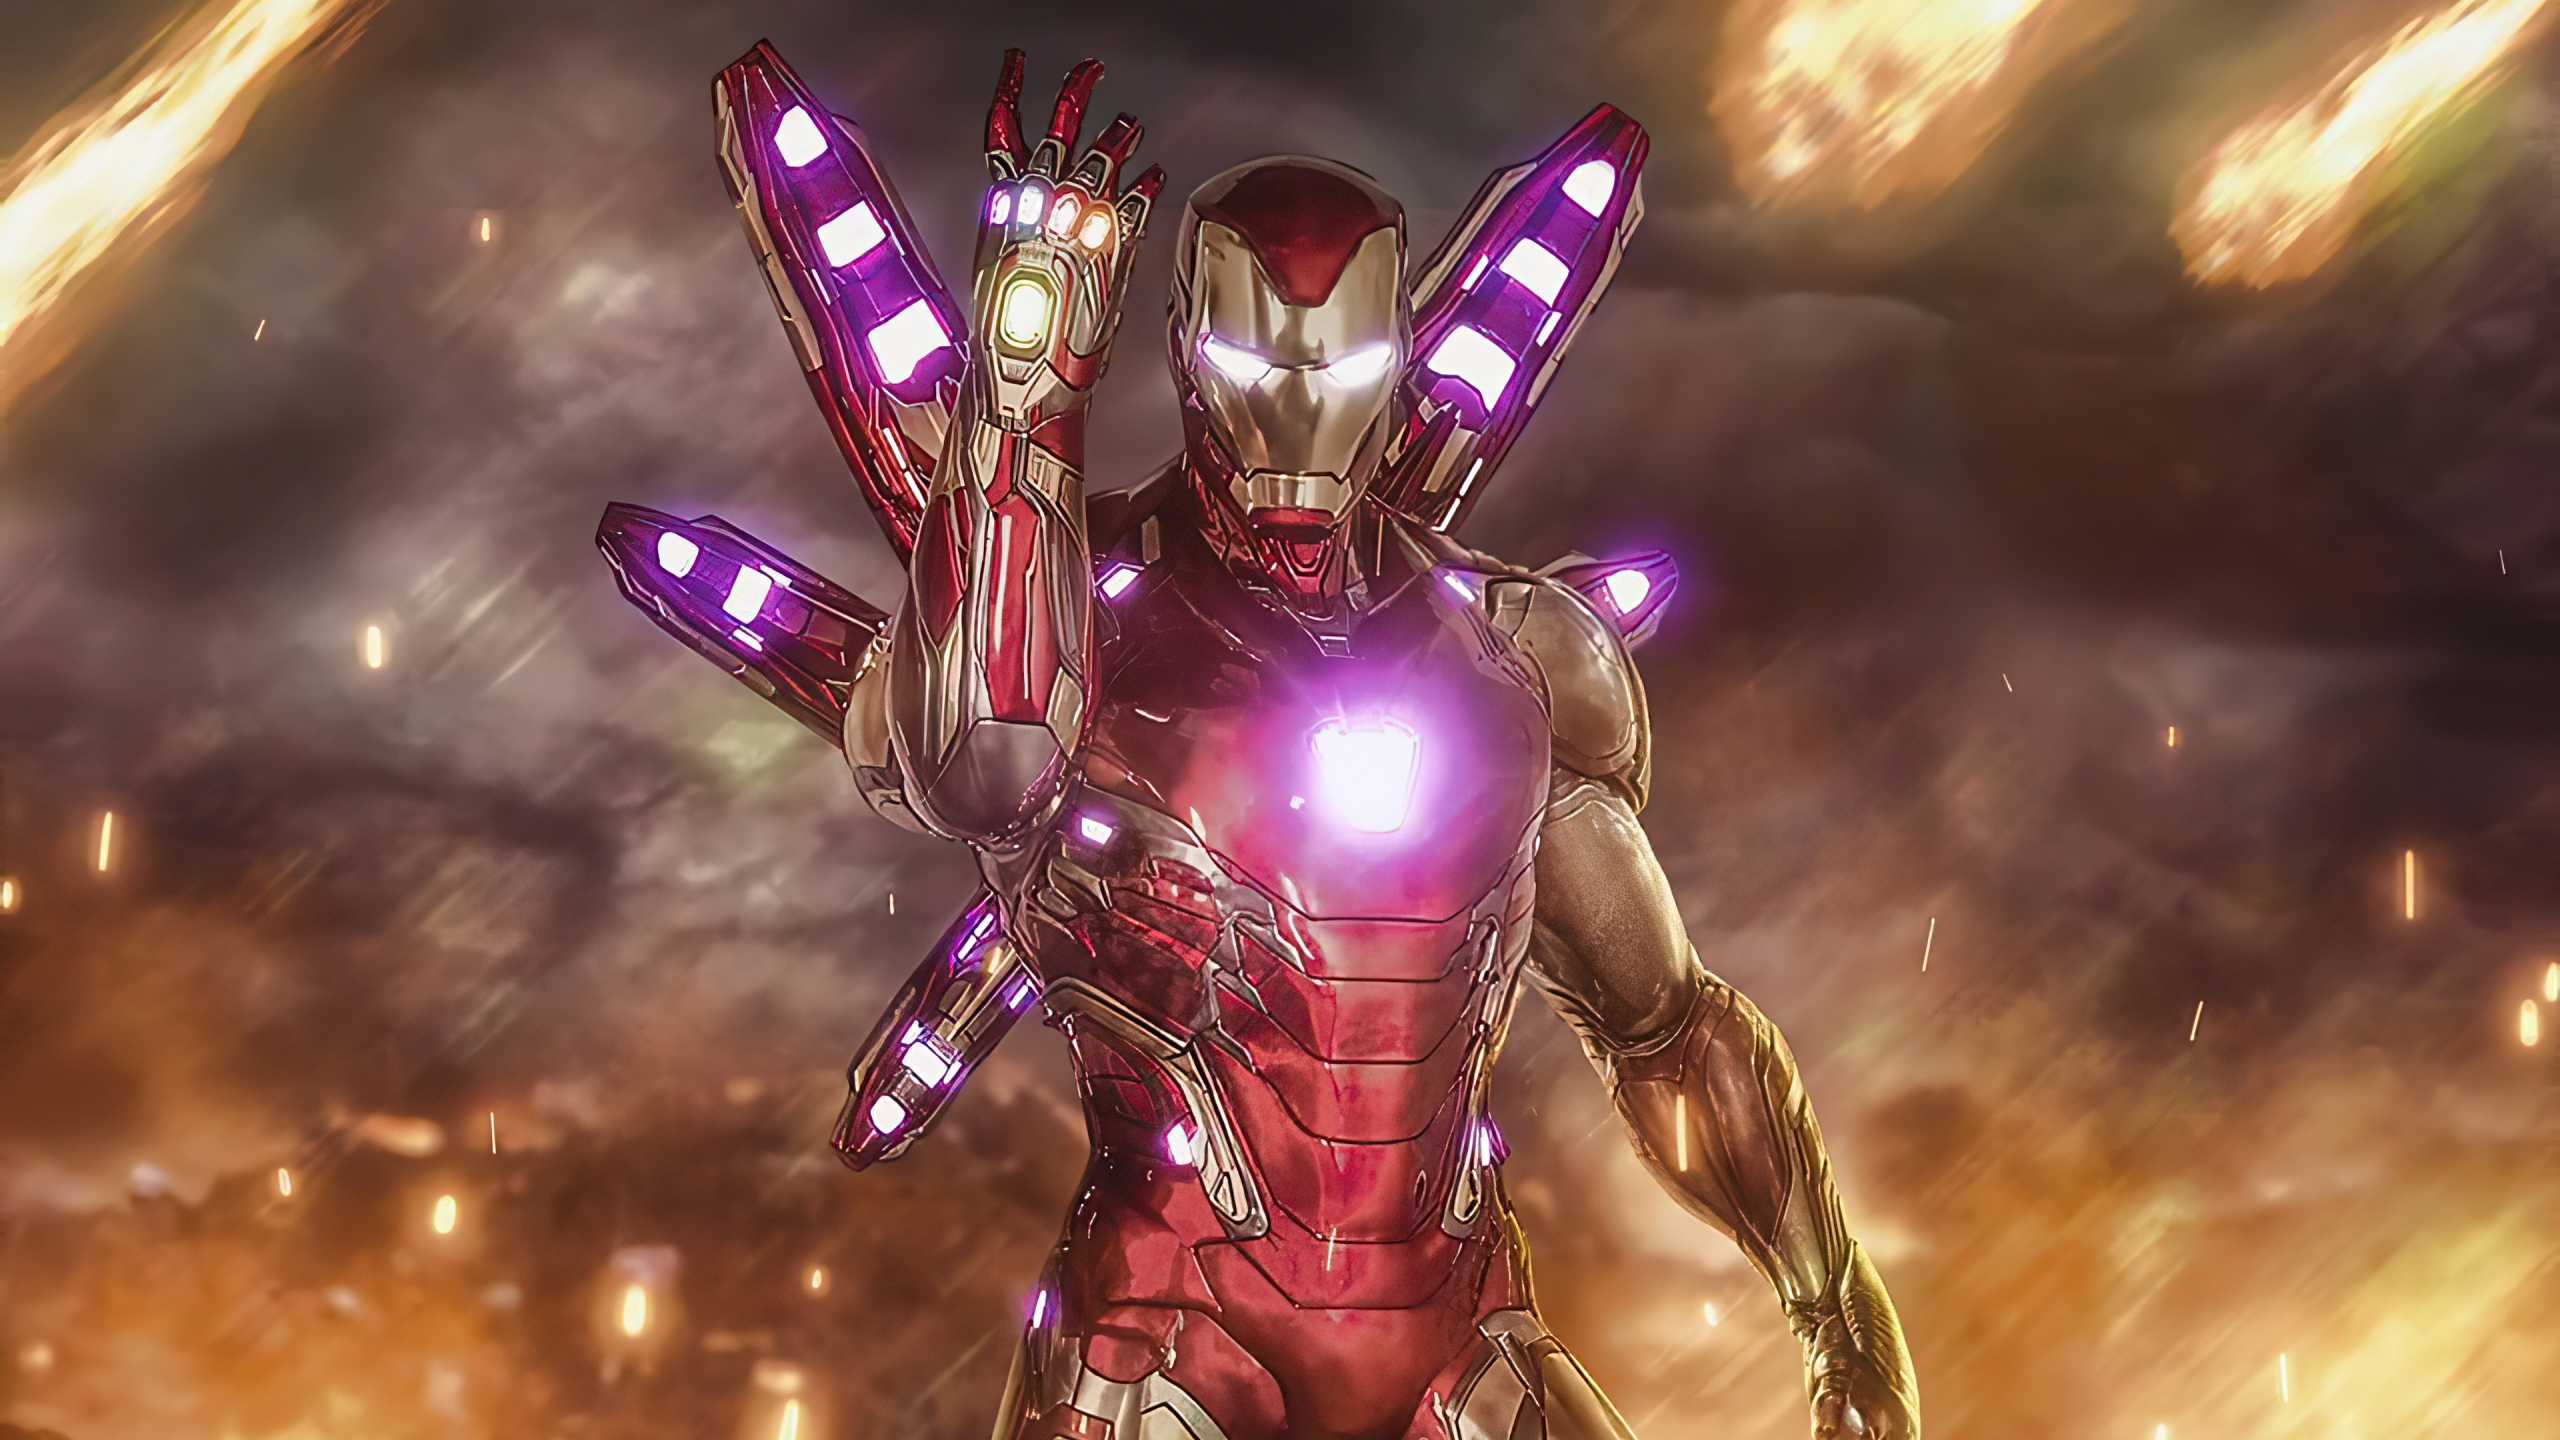 Iron man new suit 2020 Wallpaper 4k Ultra HD ID:5953